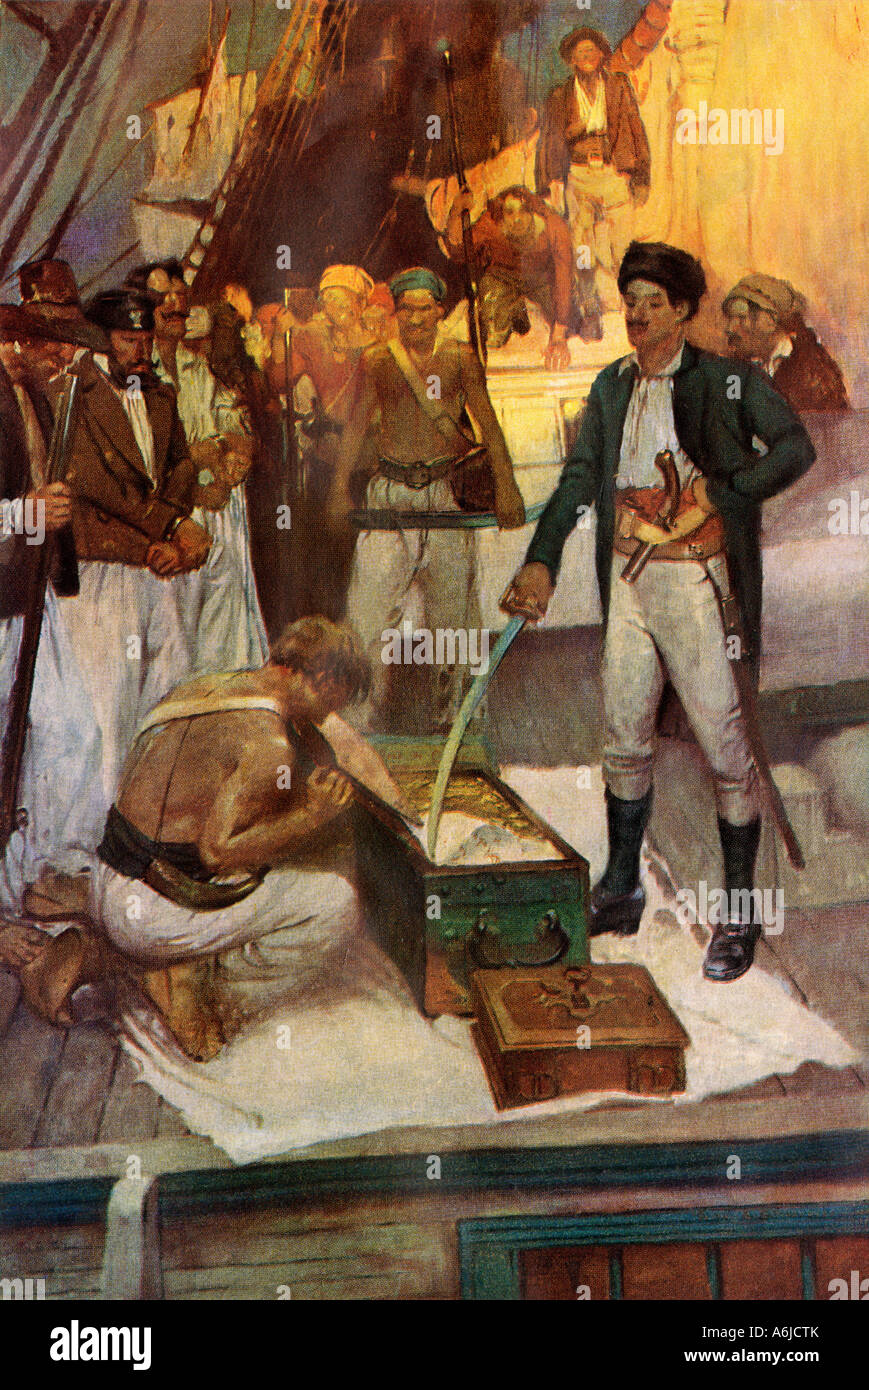 El pirata Jean Lafitte acepta un pecho de rescate. Semitono de color, de Frank Ilustración Schoonover Foto de stock